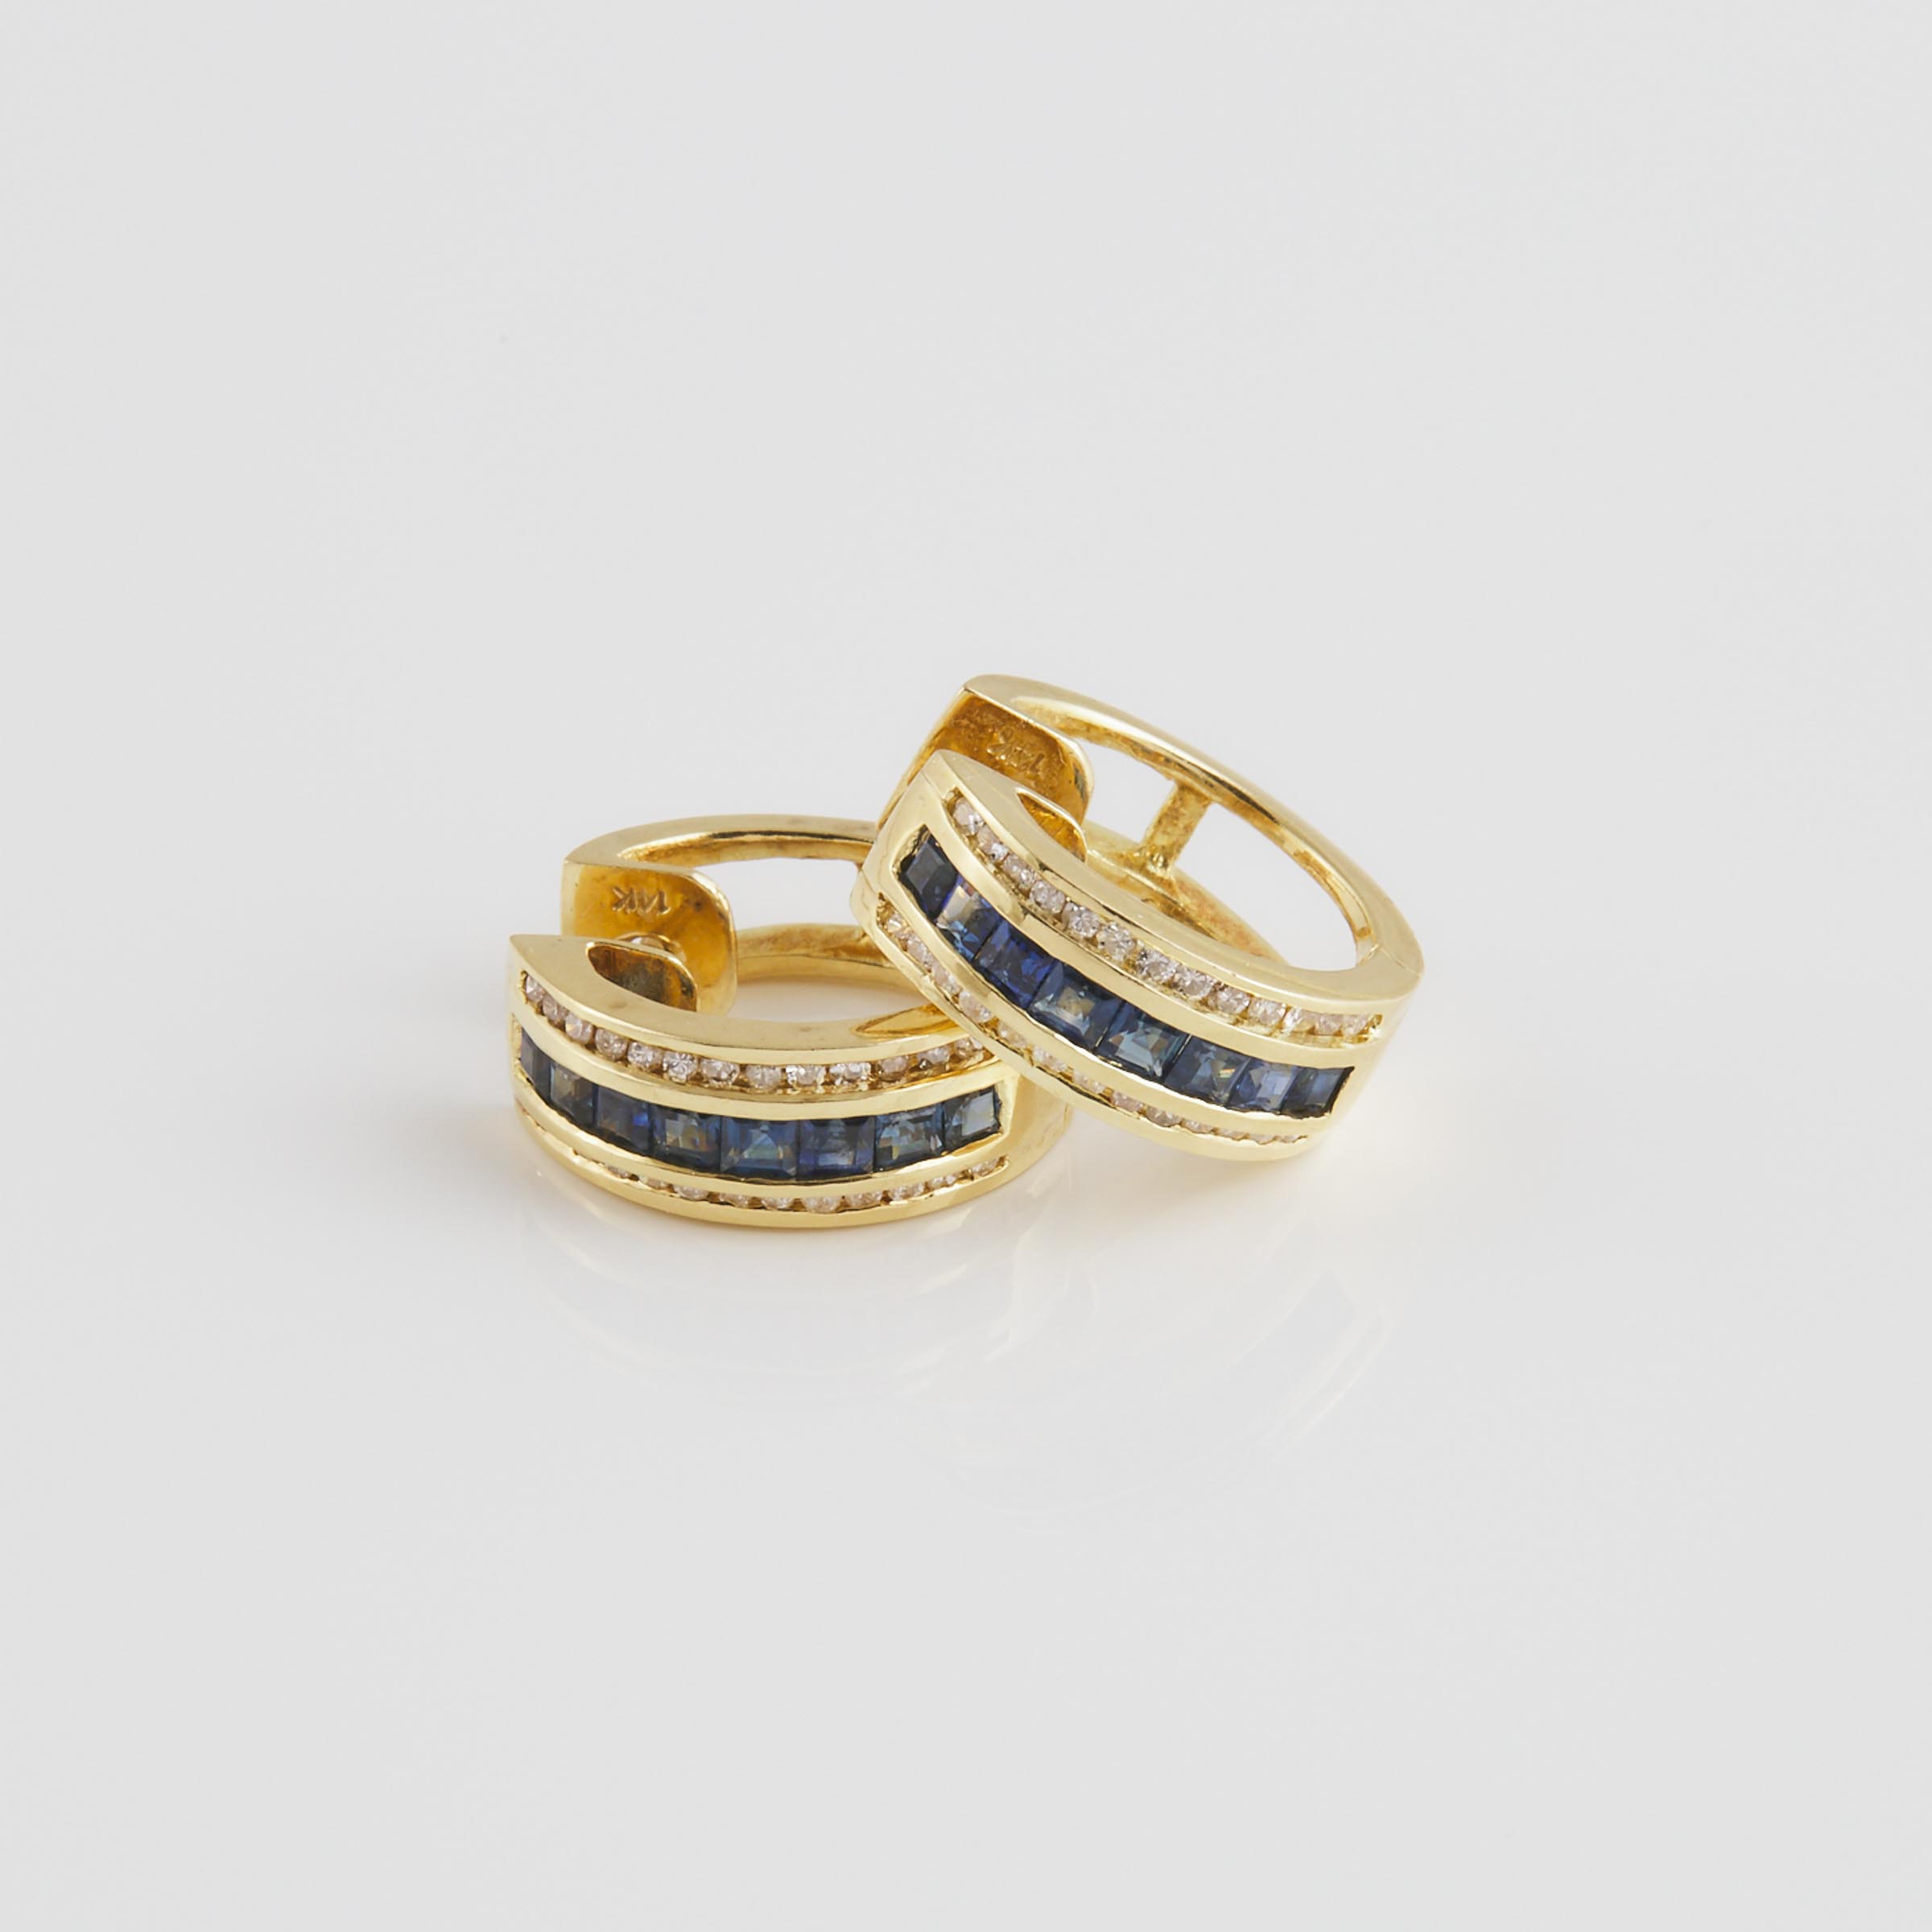 Pair Of 14k Yellow Gold 'Huggie' Earrings